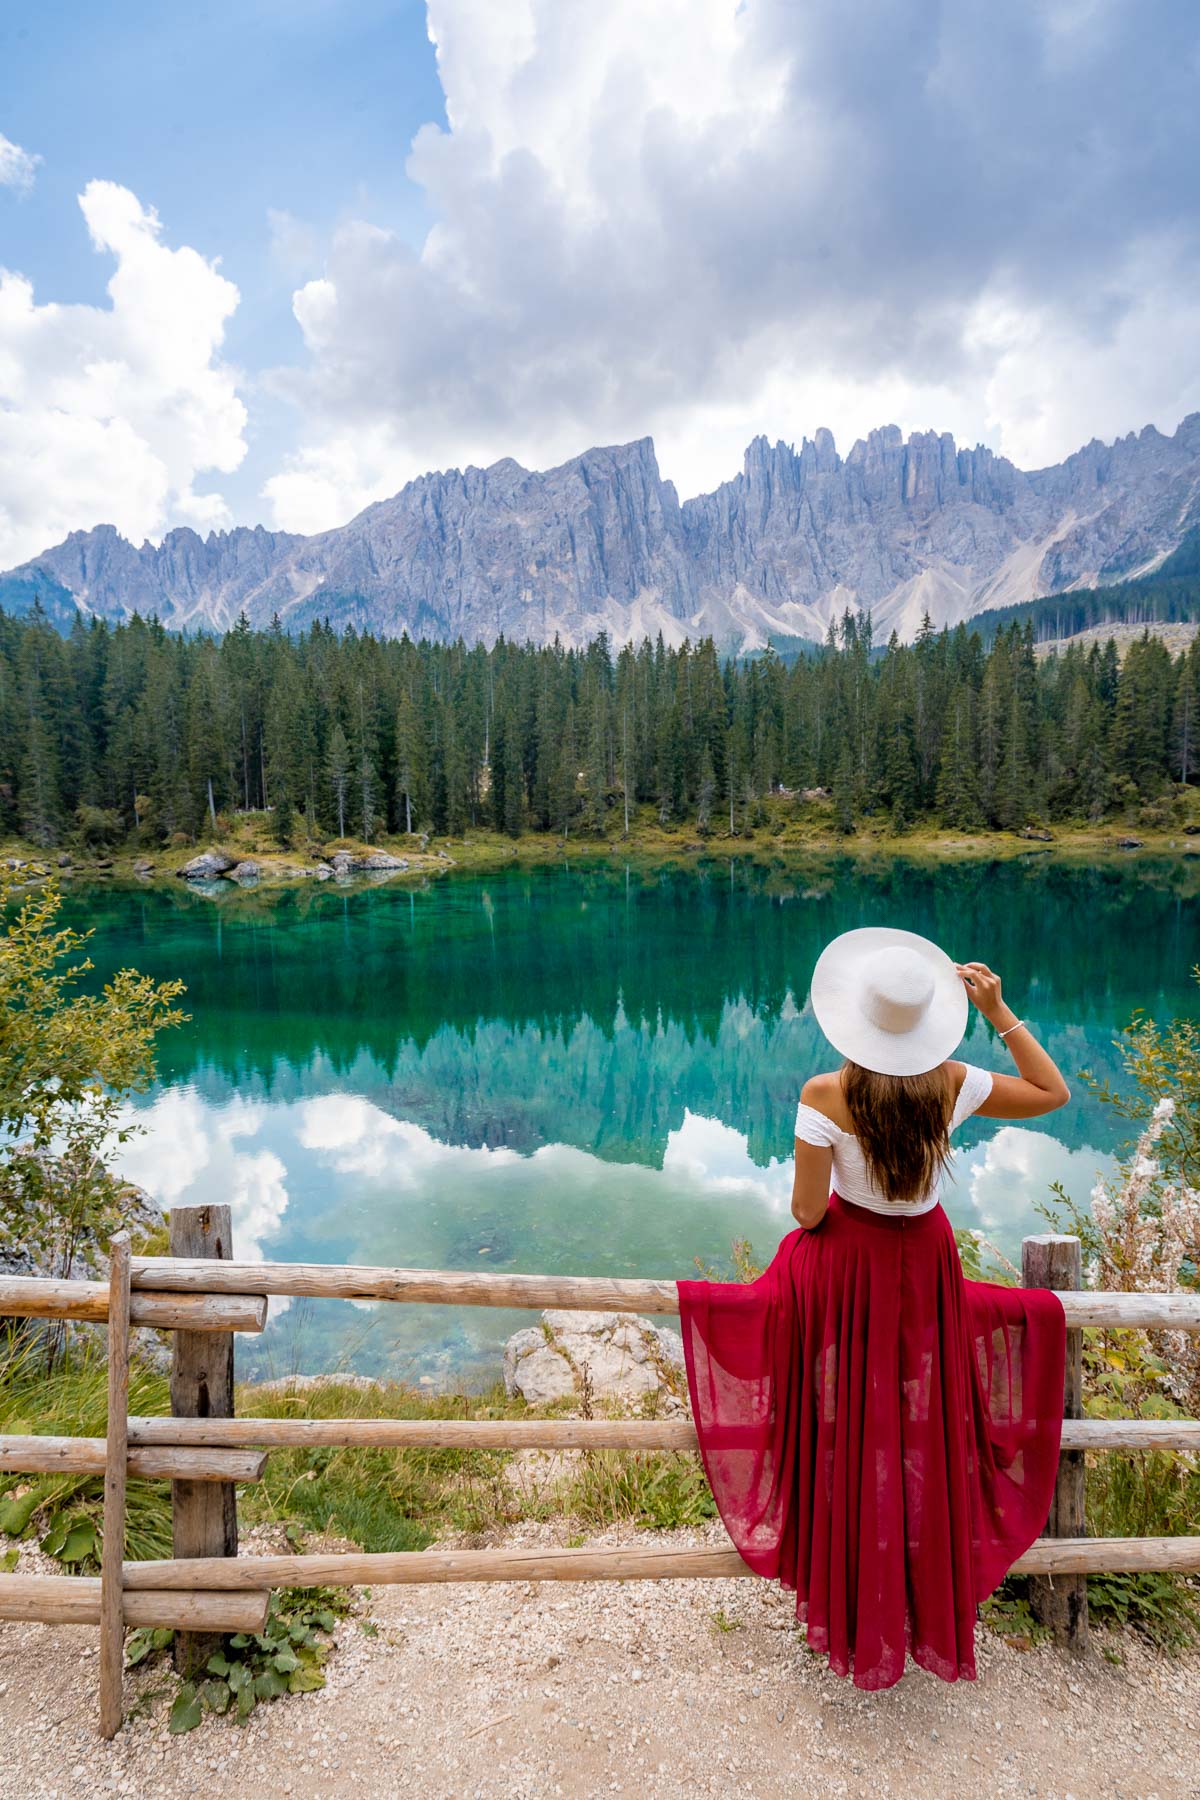 Girl at Lago di Carezza in the Dolomites, Italy